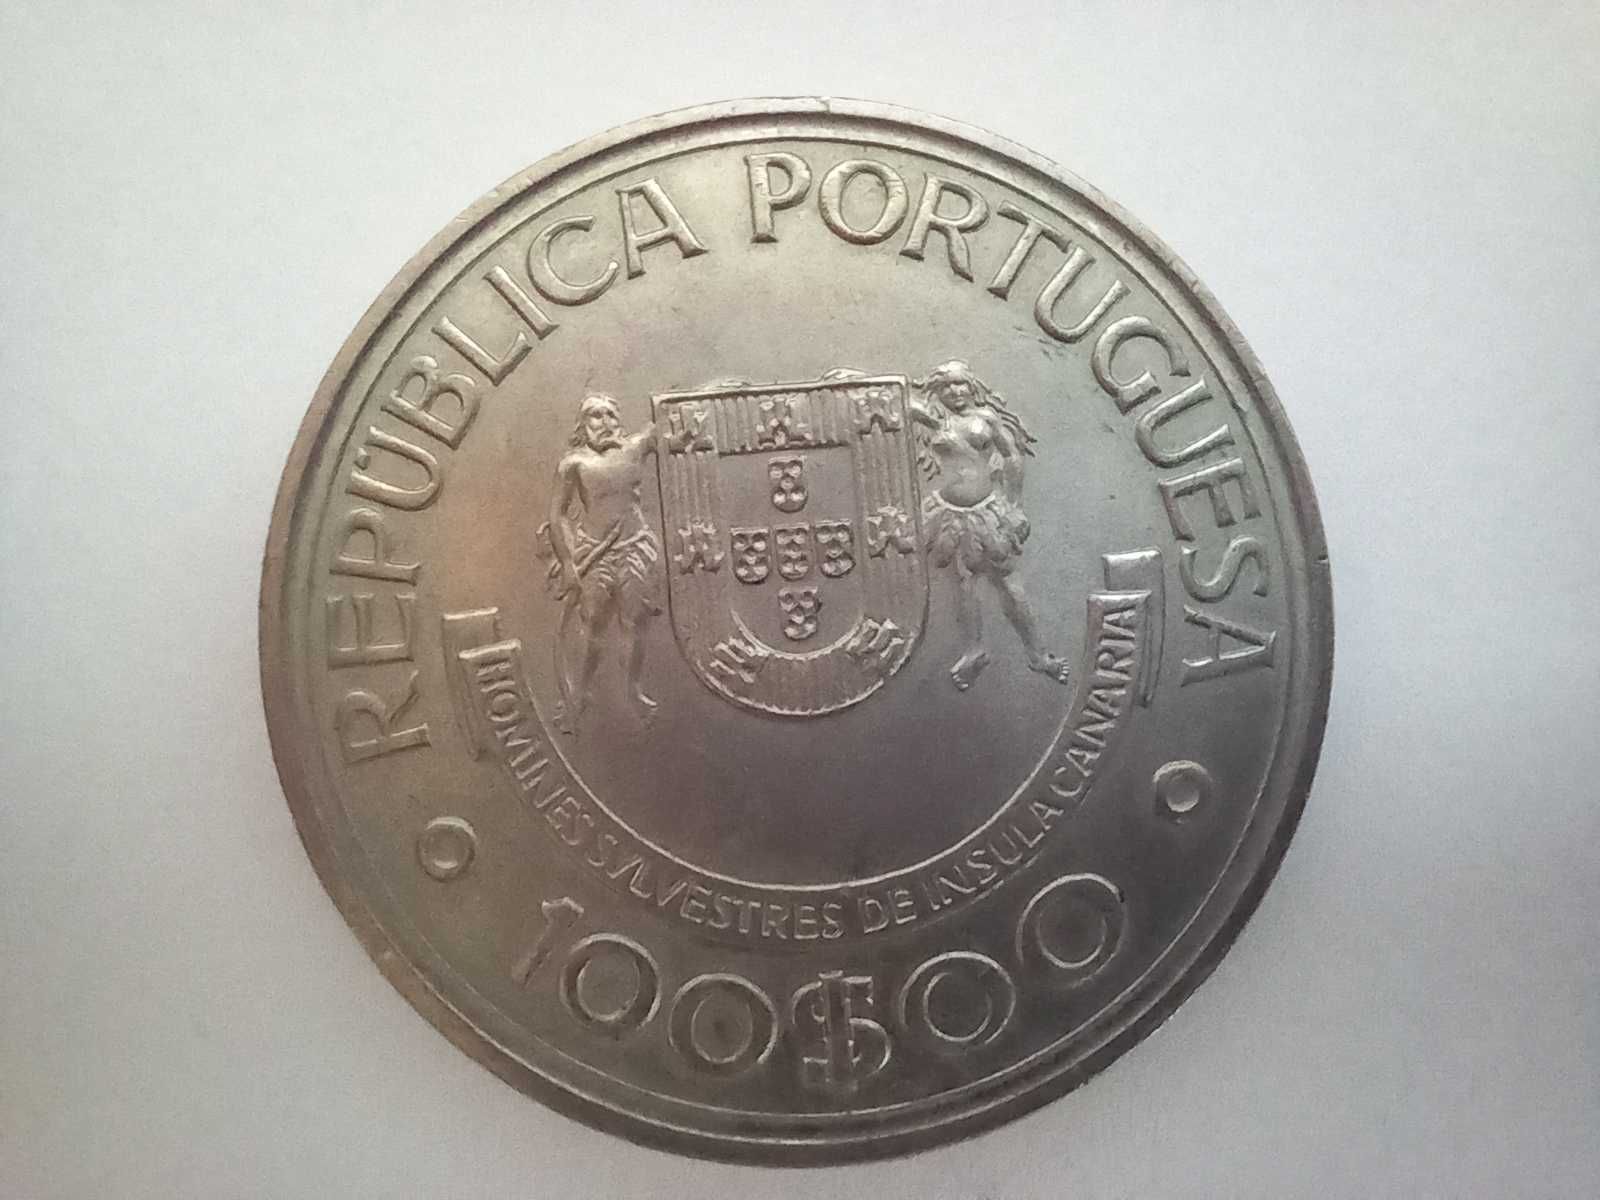 Portugal 100 escudos, 1989 - Canárias